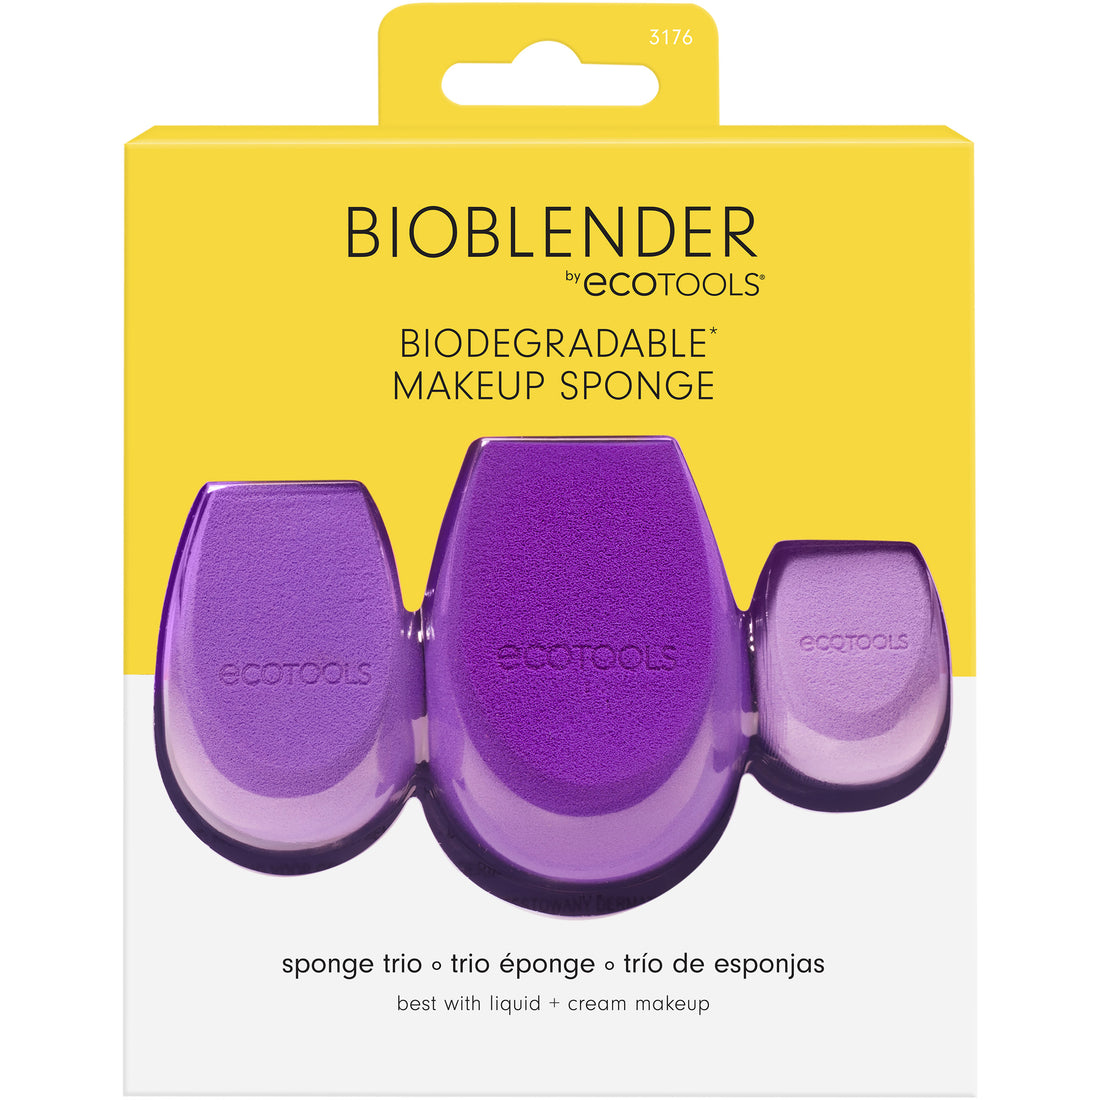 Bioblender Makeup Sponge Trio